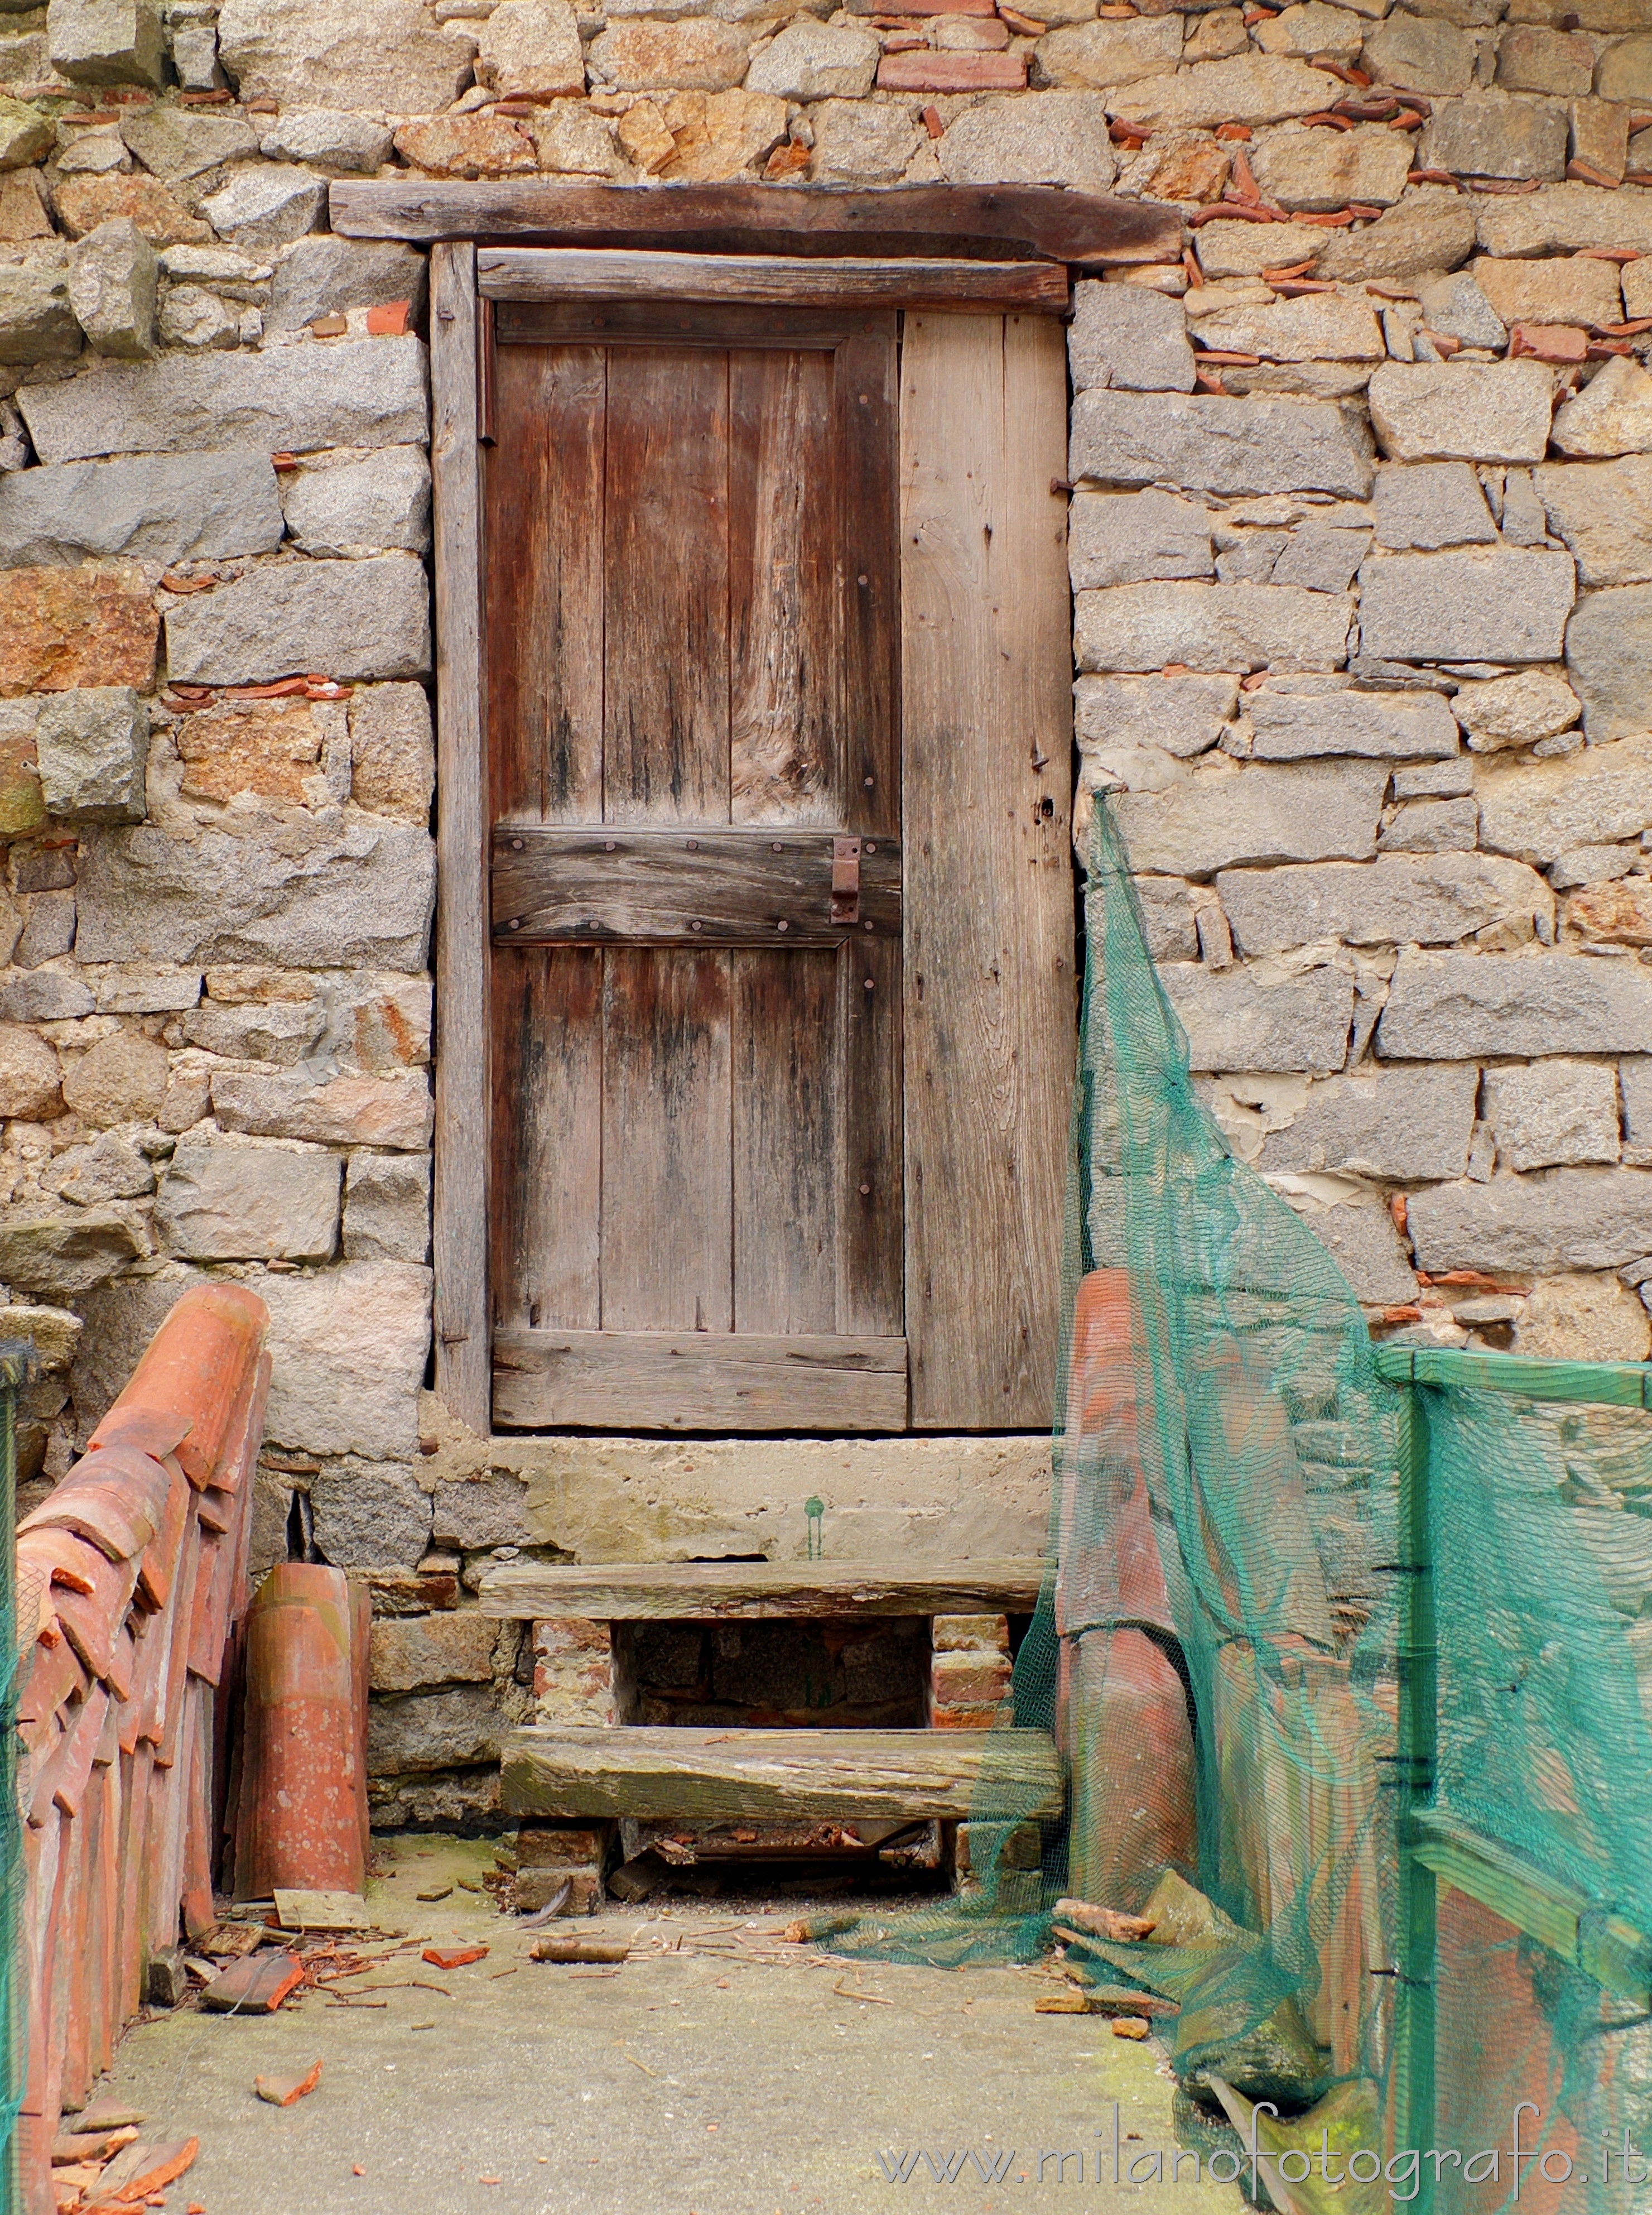 Quittengo fraction of Campiglia Cervo (Biella, Italy): Old door - Quittengo fraction of Campiglia Cervo (Biella, Italy)